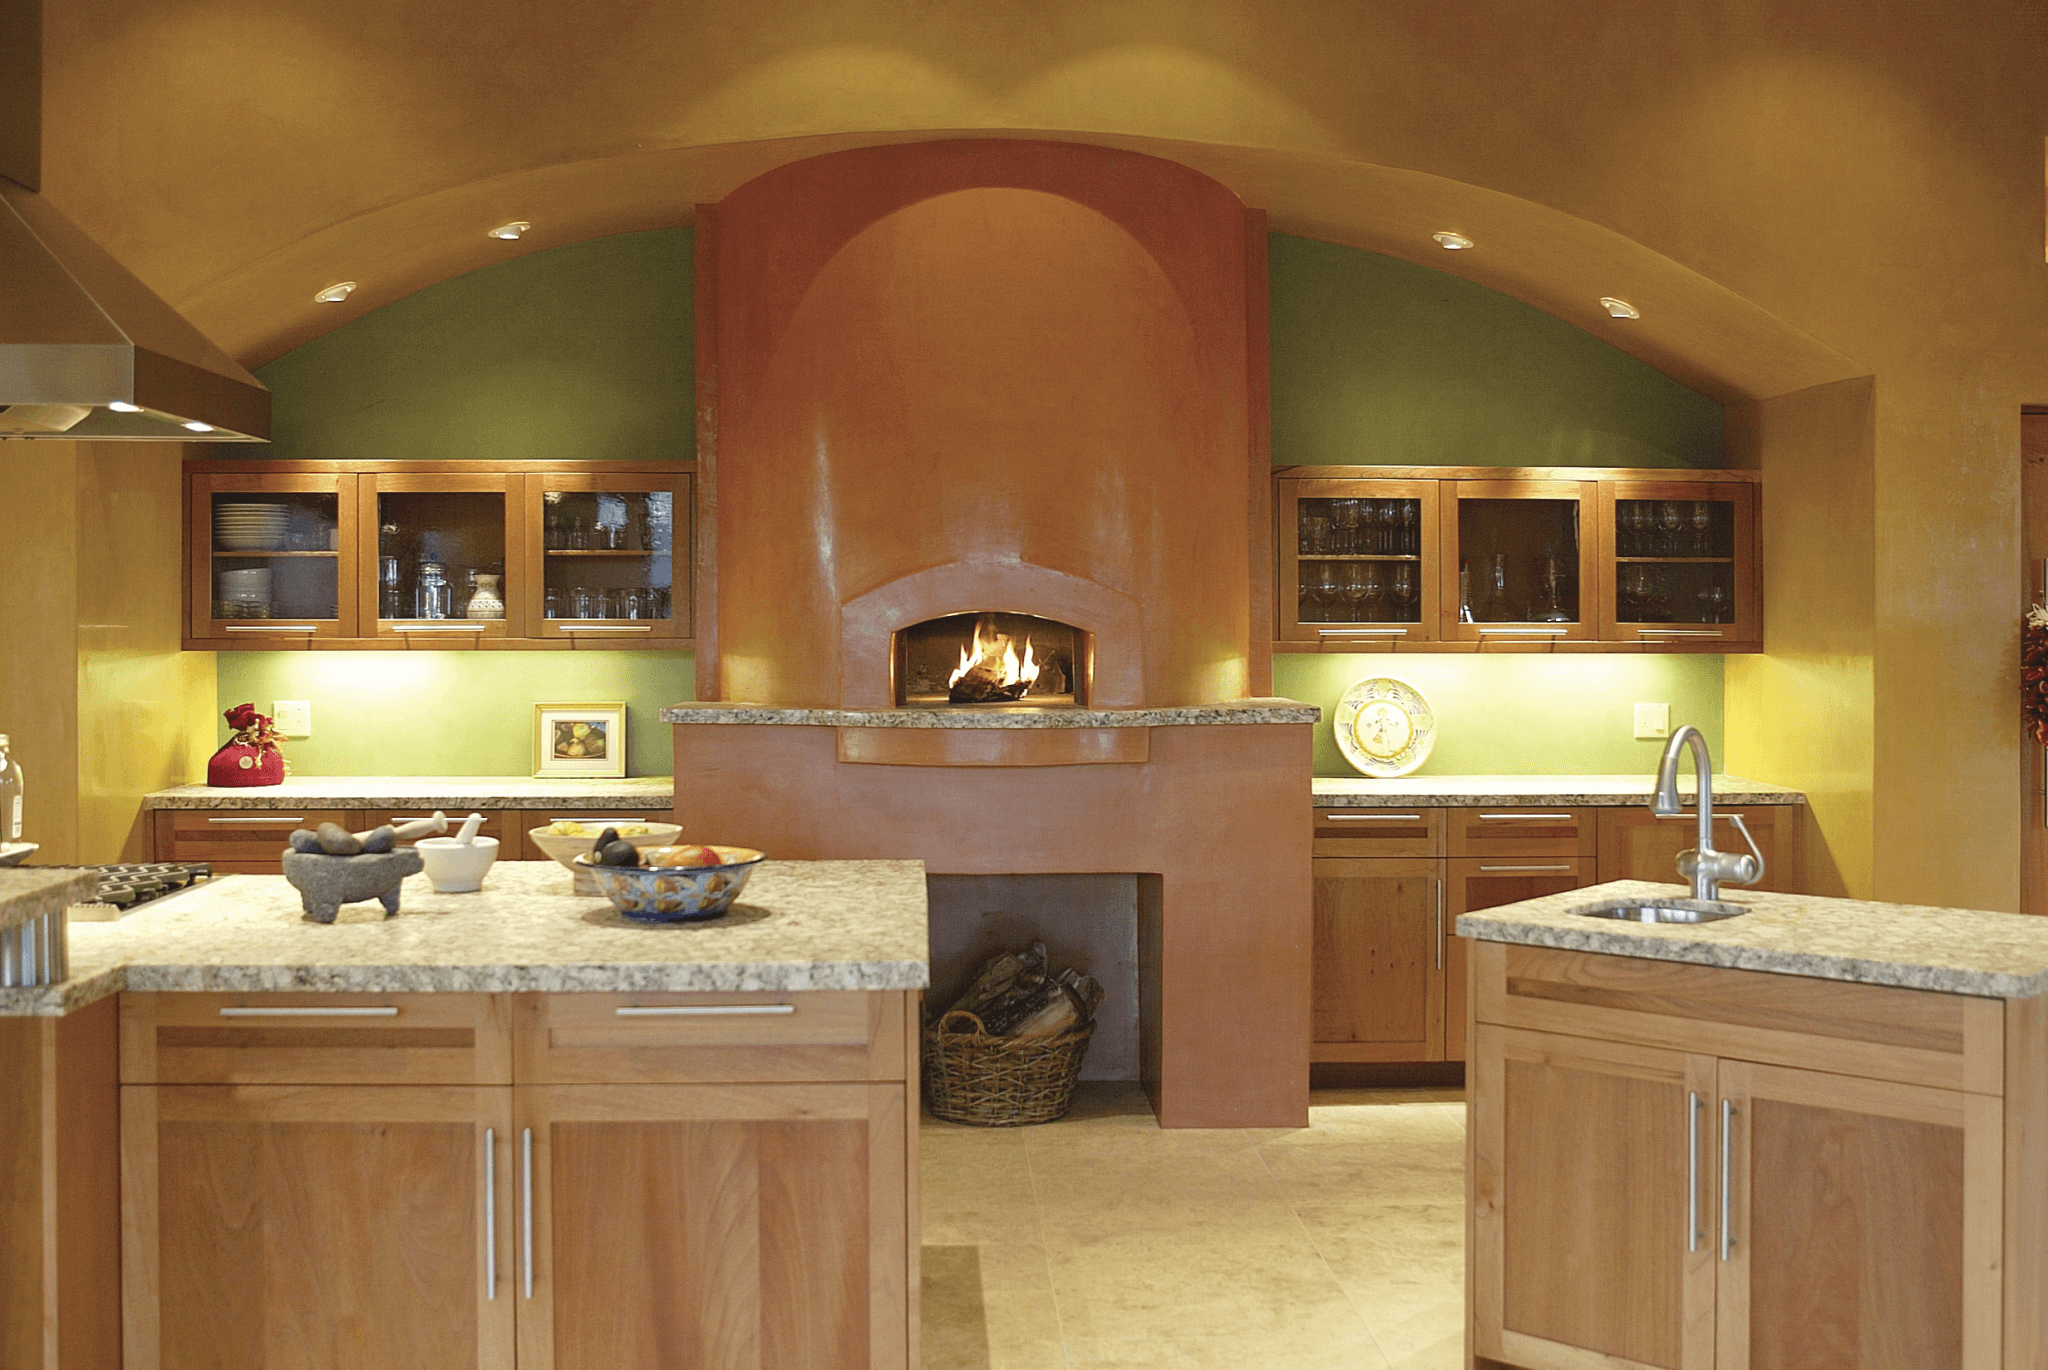 Mugnaini Medio oven in a residential kitchen